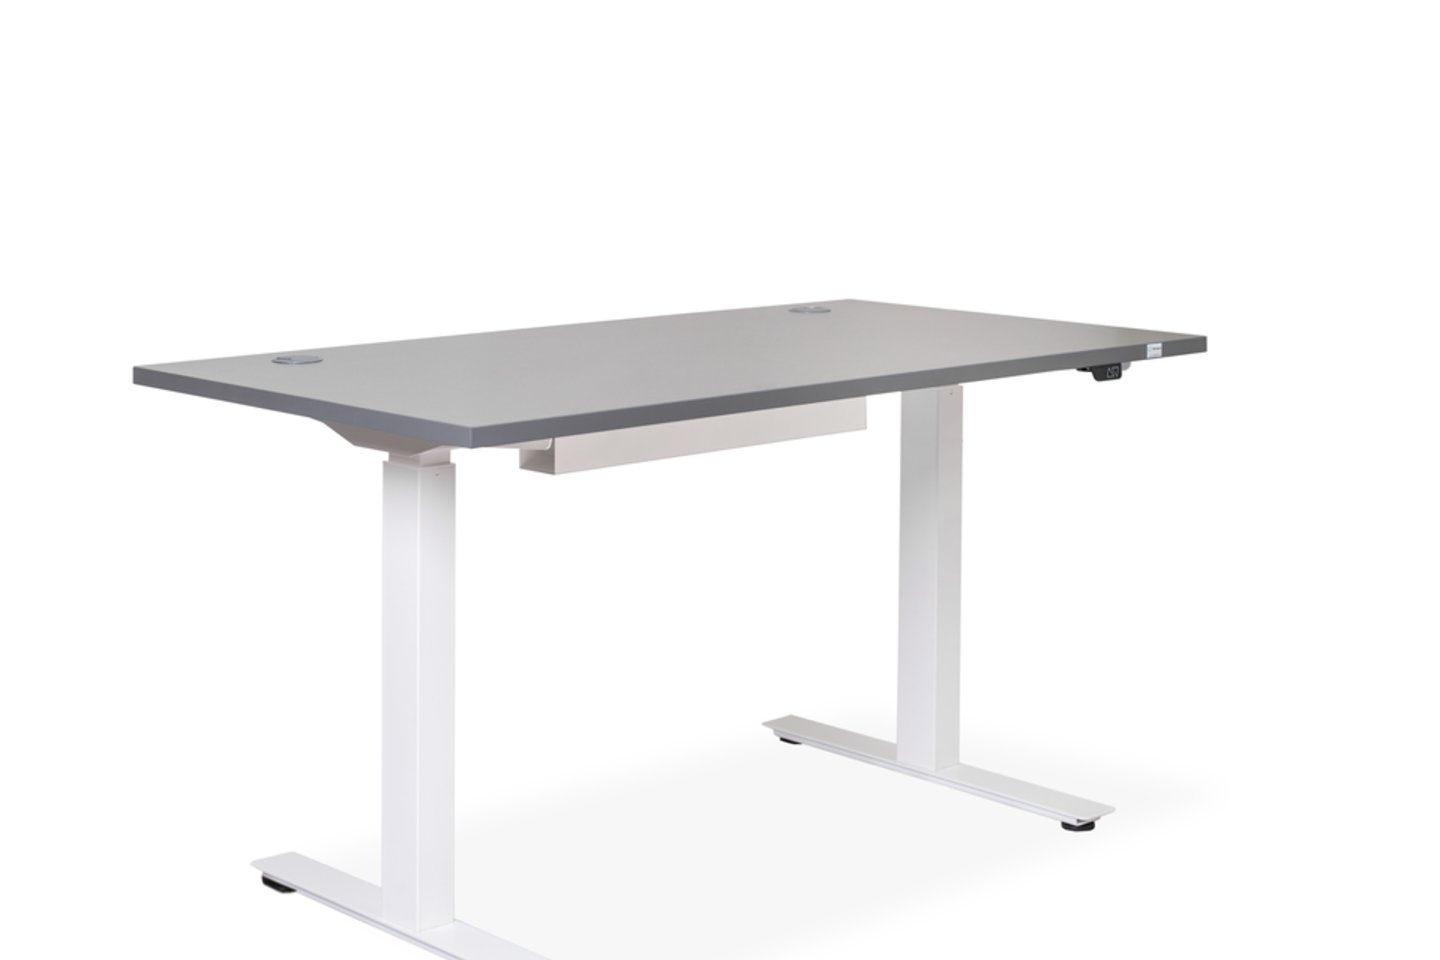 Reguliuojamo aukščio stalai leidžia pakeisti kūno padėtį iš sėdimos į stovimą ir atvirkščiai.